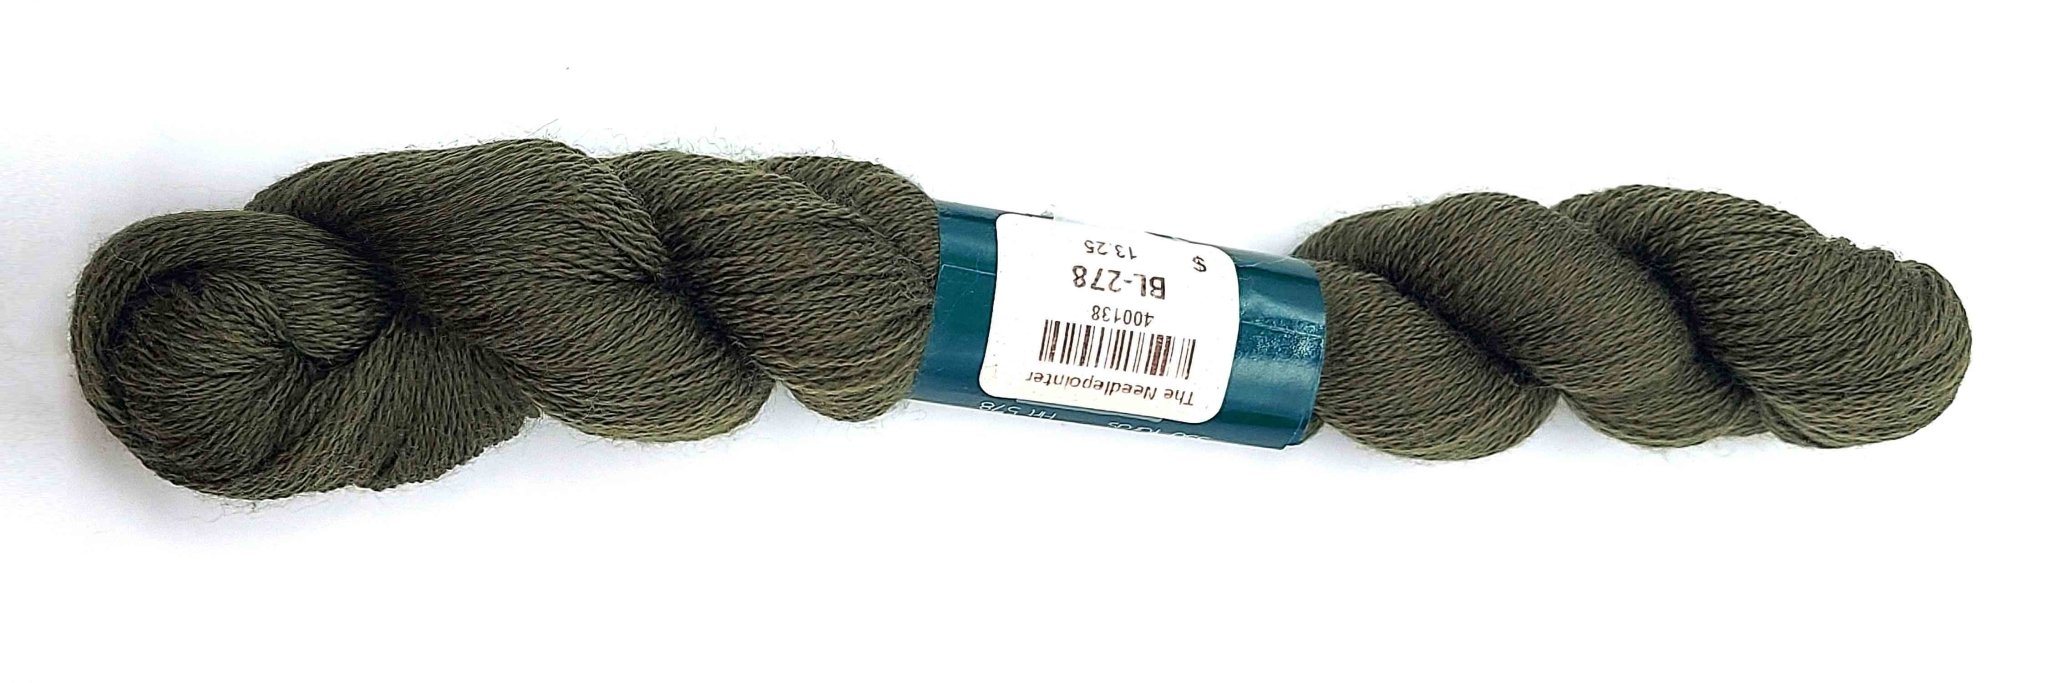 Bella Lusso Merino Wool 278 Brazil Nut - The Flying Needles